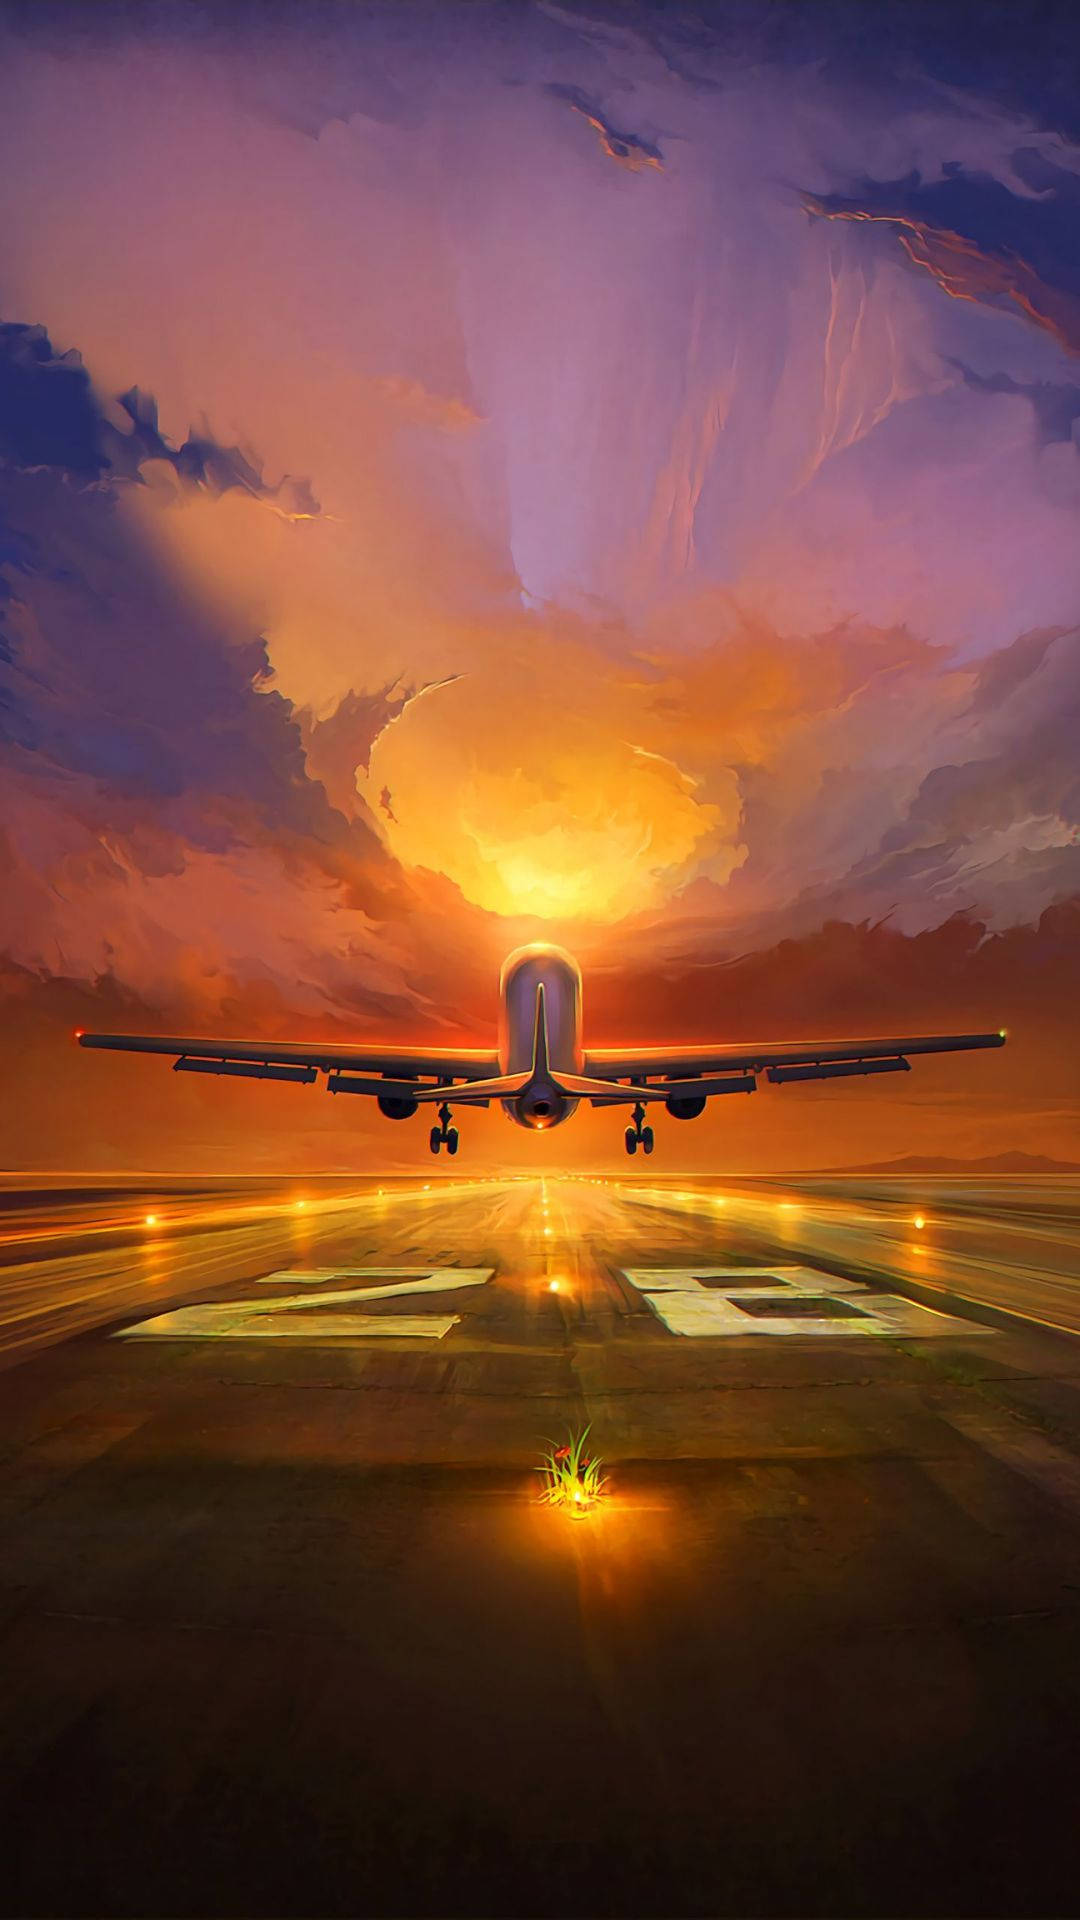 Runway And Airplane Artwork Wallpaper